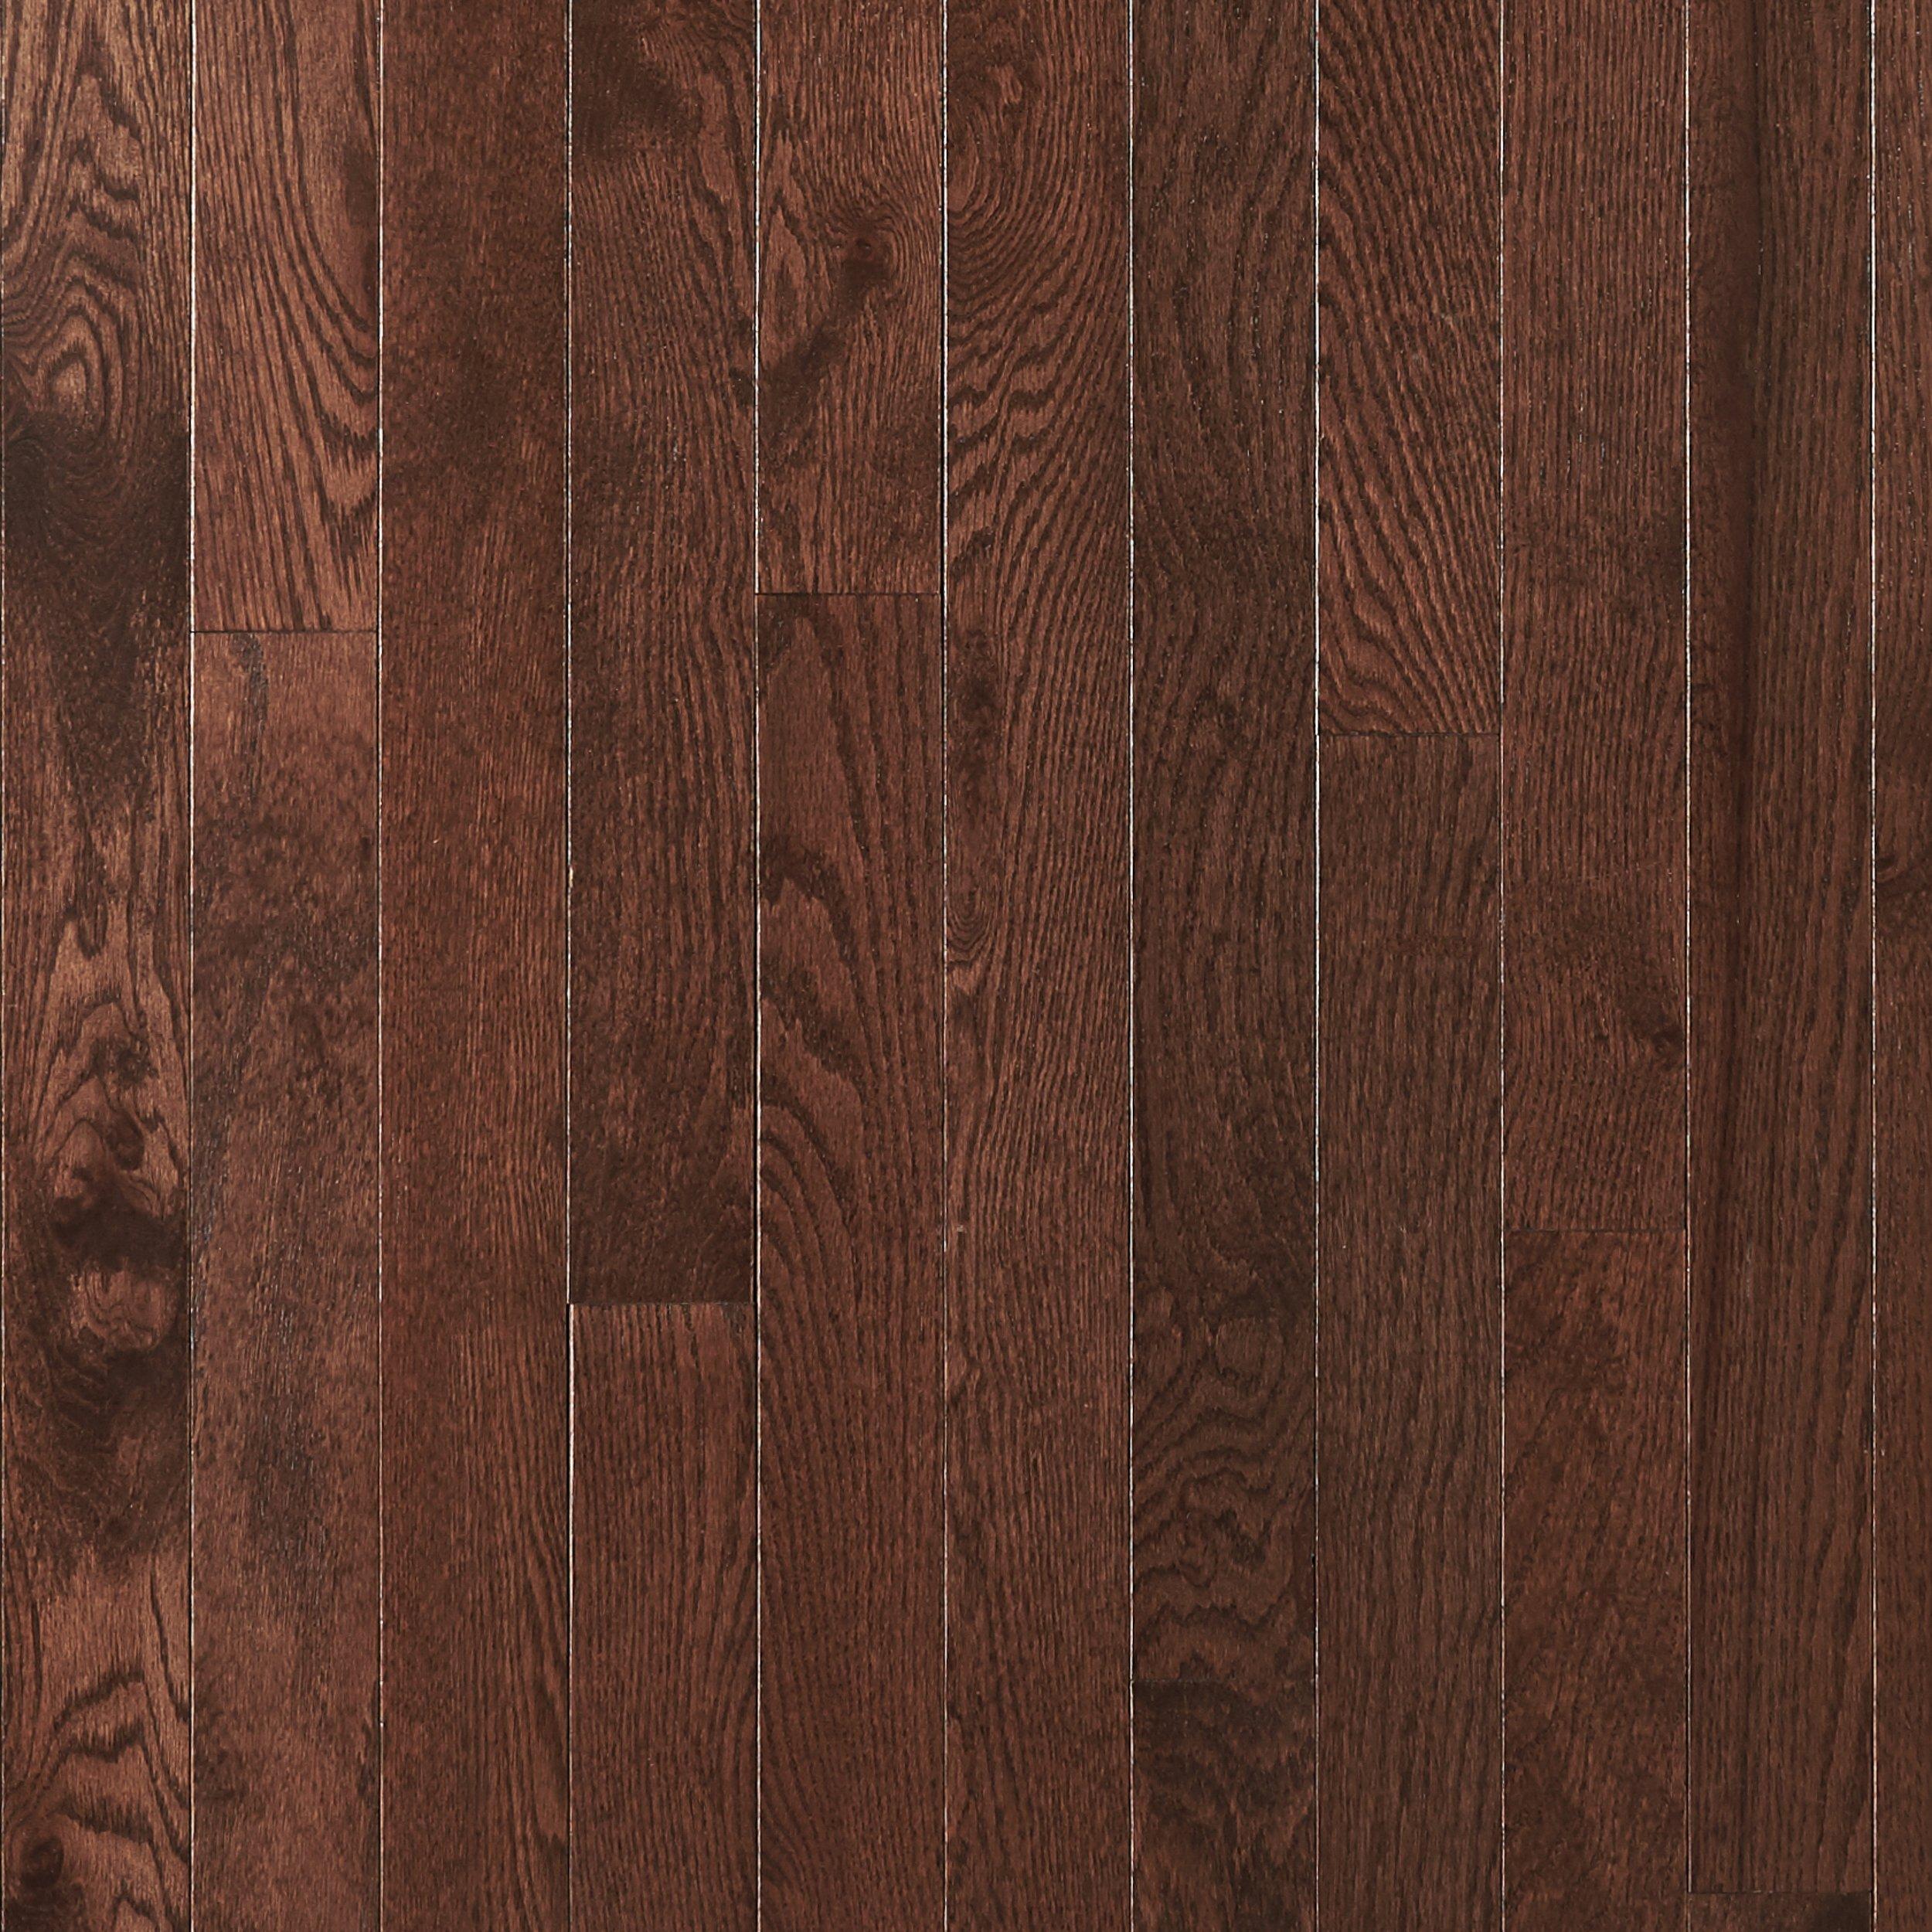 Dark Mocha Oak Smooth Solid Hardwood, Dark Solid Hardwood Floors